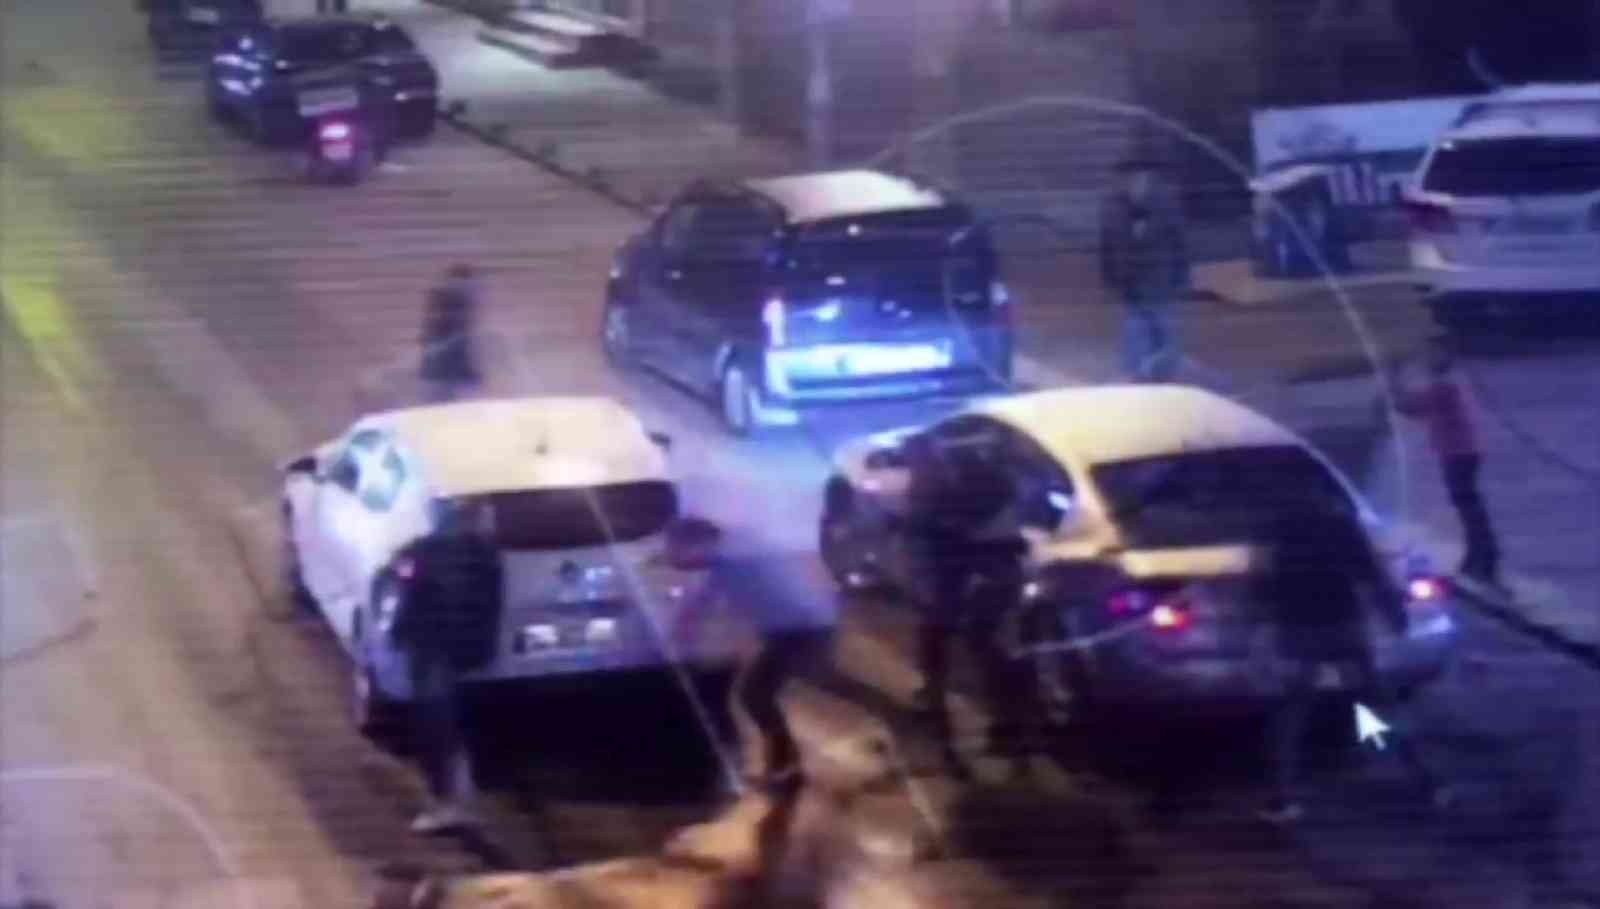 Pendik’te, saldırganın trafikte tartıştığı kişiyi vurduğu anlar kamerada #istanbul